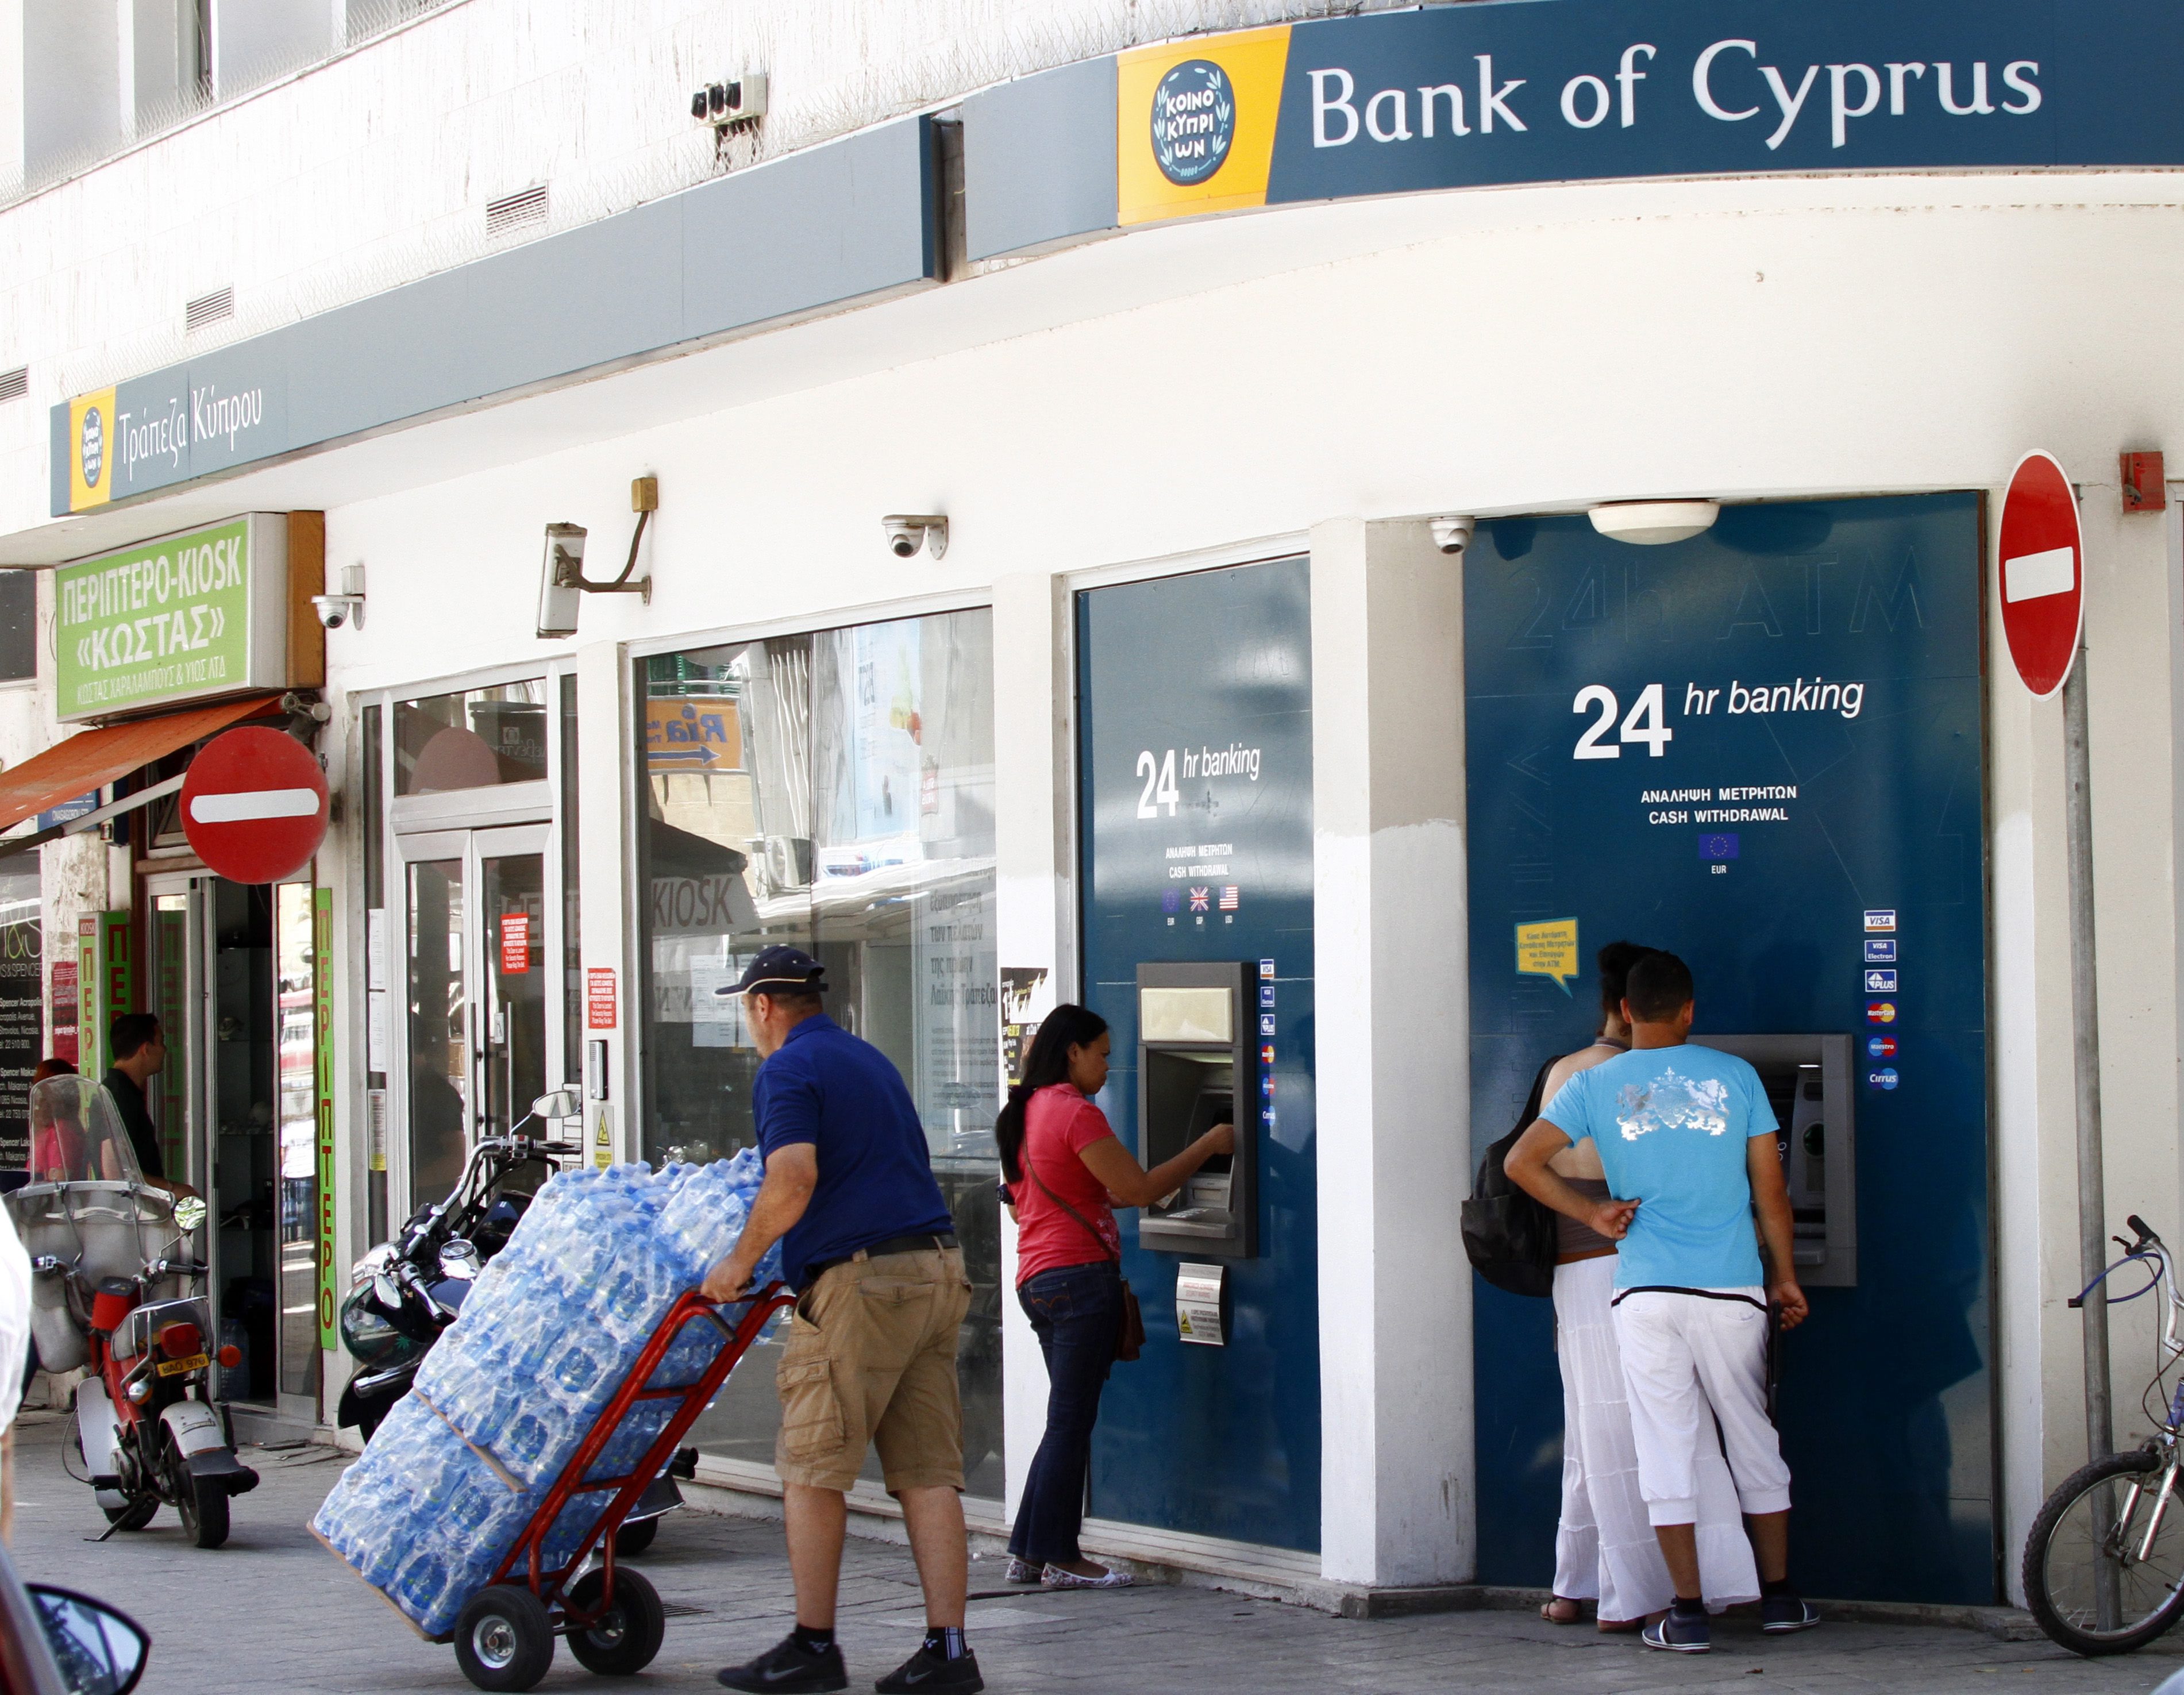 De economie van Cyprus zinkt steeds verder weg. Krediet wordt niet meer verstrekt en toeristen laten het afweten. Ook Nederlanders laten het eiland links liggen. Terwijl Cyprus probeert de economie weer op de rails te krijgen na de bankencrisis eerder dit jaar, kiezen veel Nederlandse toeristen toch voor een andere zonbestemming.